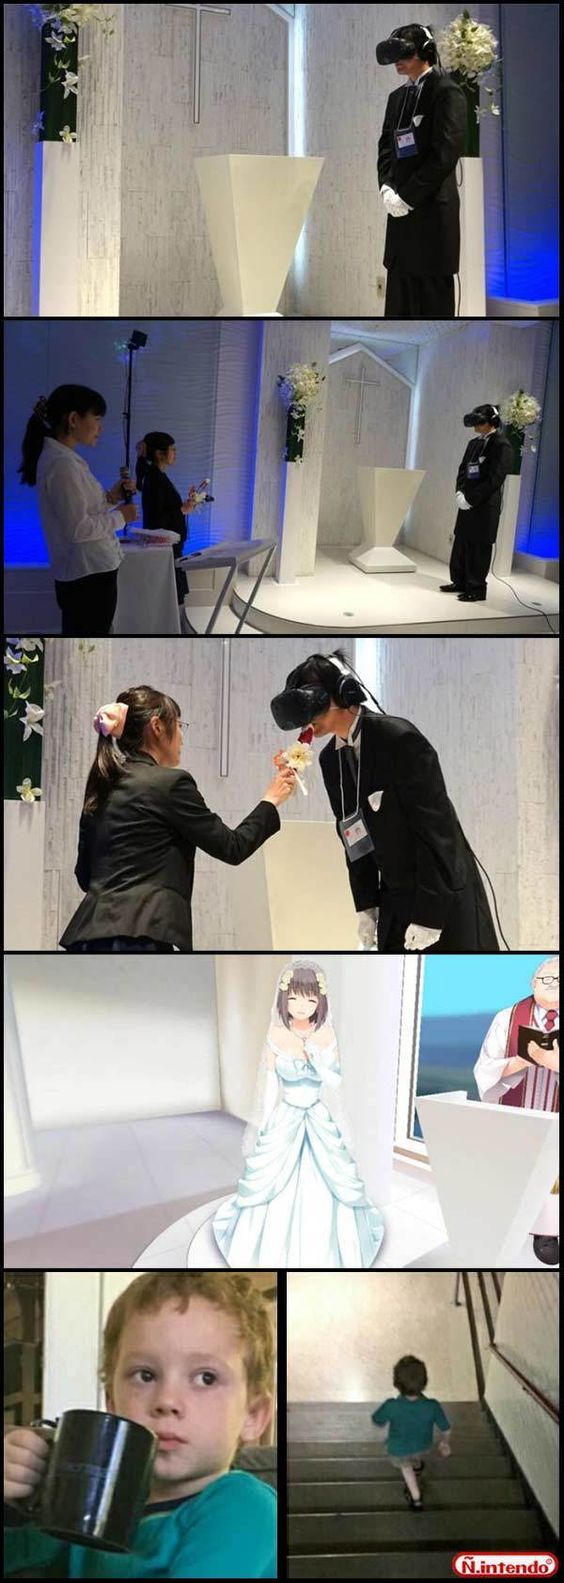 Japanese man getting married to virtual cartoon girl, kid watching it leaves